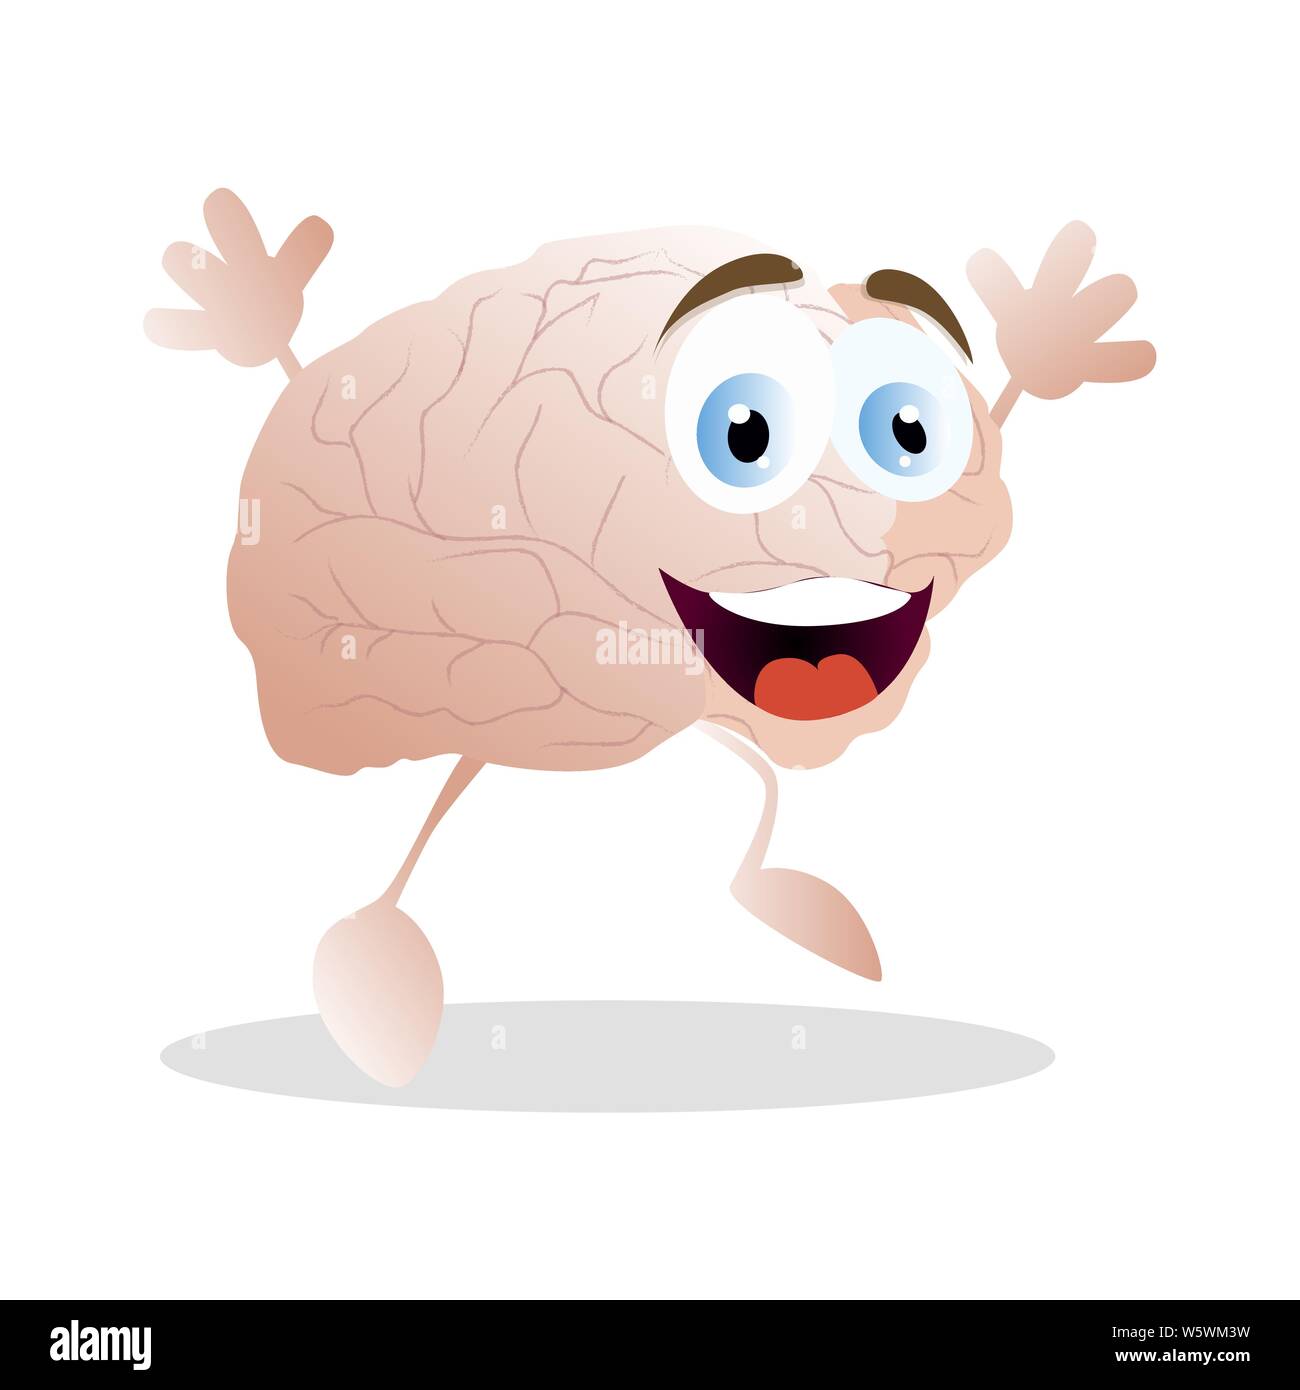 L'émotion du bonheur cerveau, vector cartoon Mascot. Cerveau vecteur se sent heureux, heureux et de bonne humeur les droits de l'esprit, l'intelligence émotion illustration fac Illustration de Vecteur